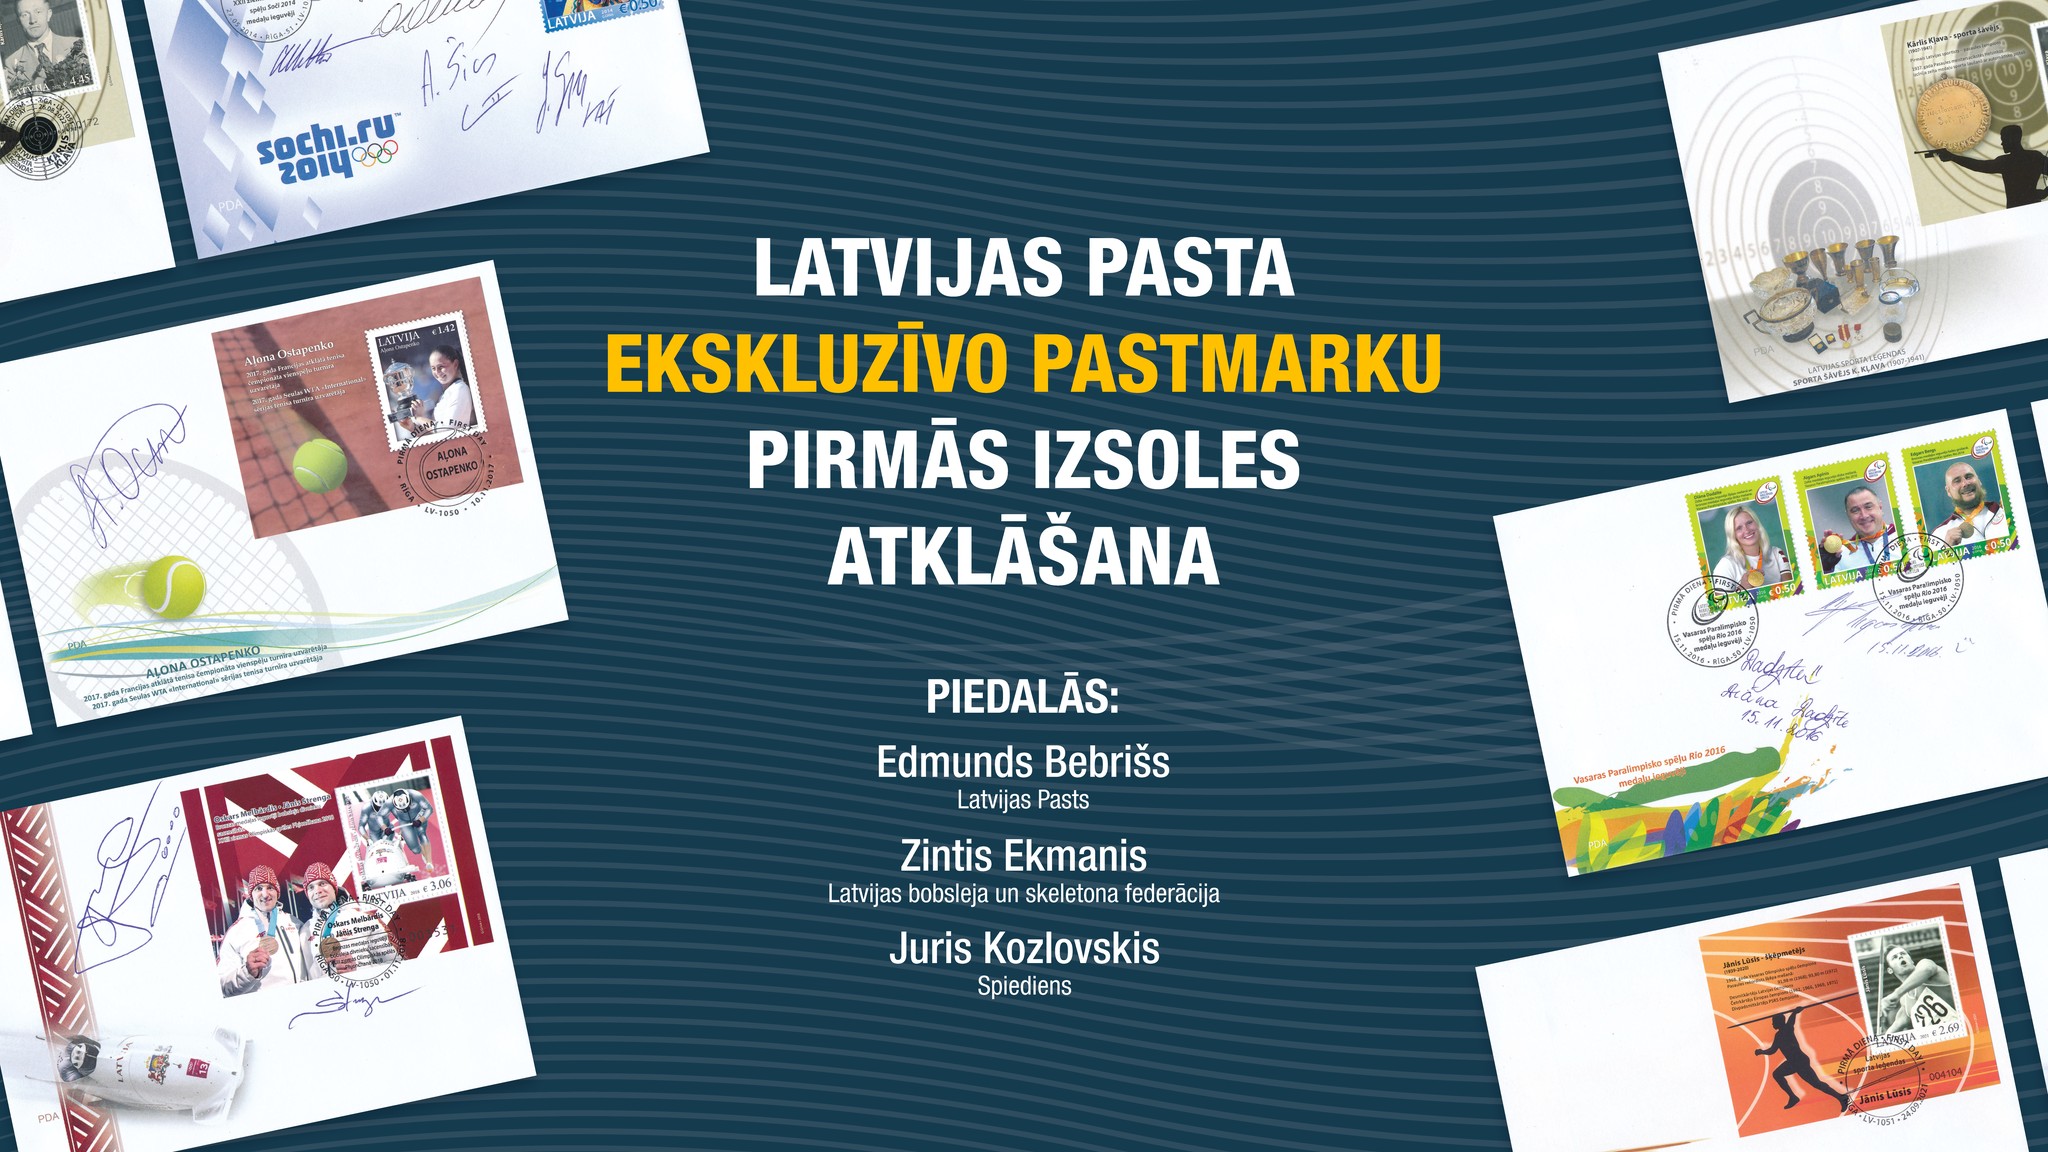 Latvijas Pasts organizē unikālu sporta pastmarku izdevumu izsoli ar ekskluzīviem sportistu autogrāfiem